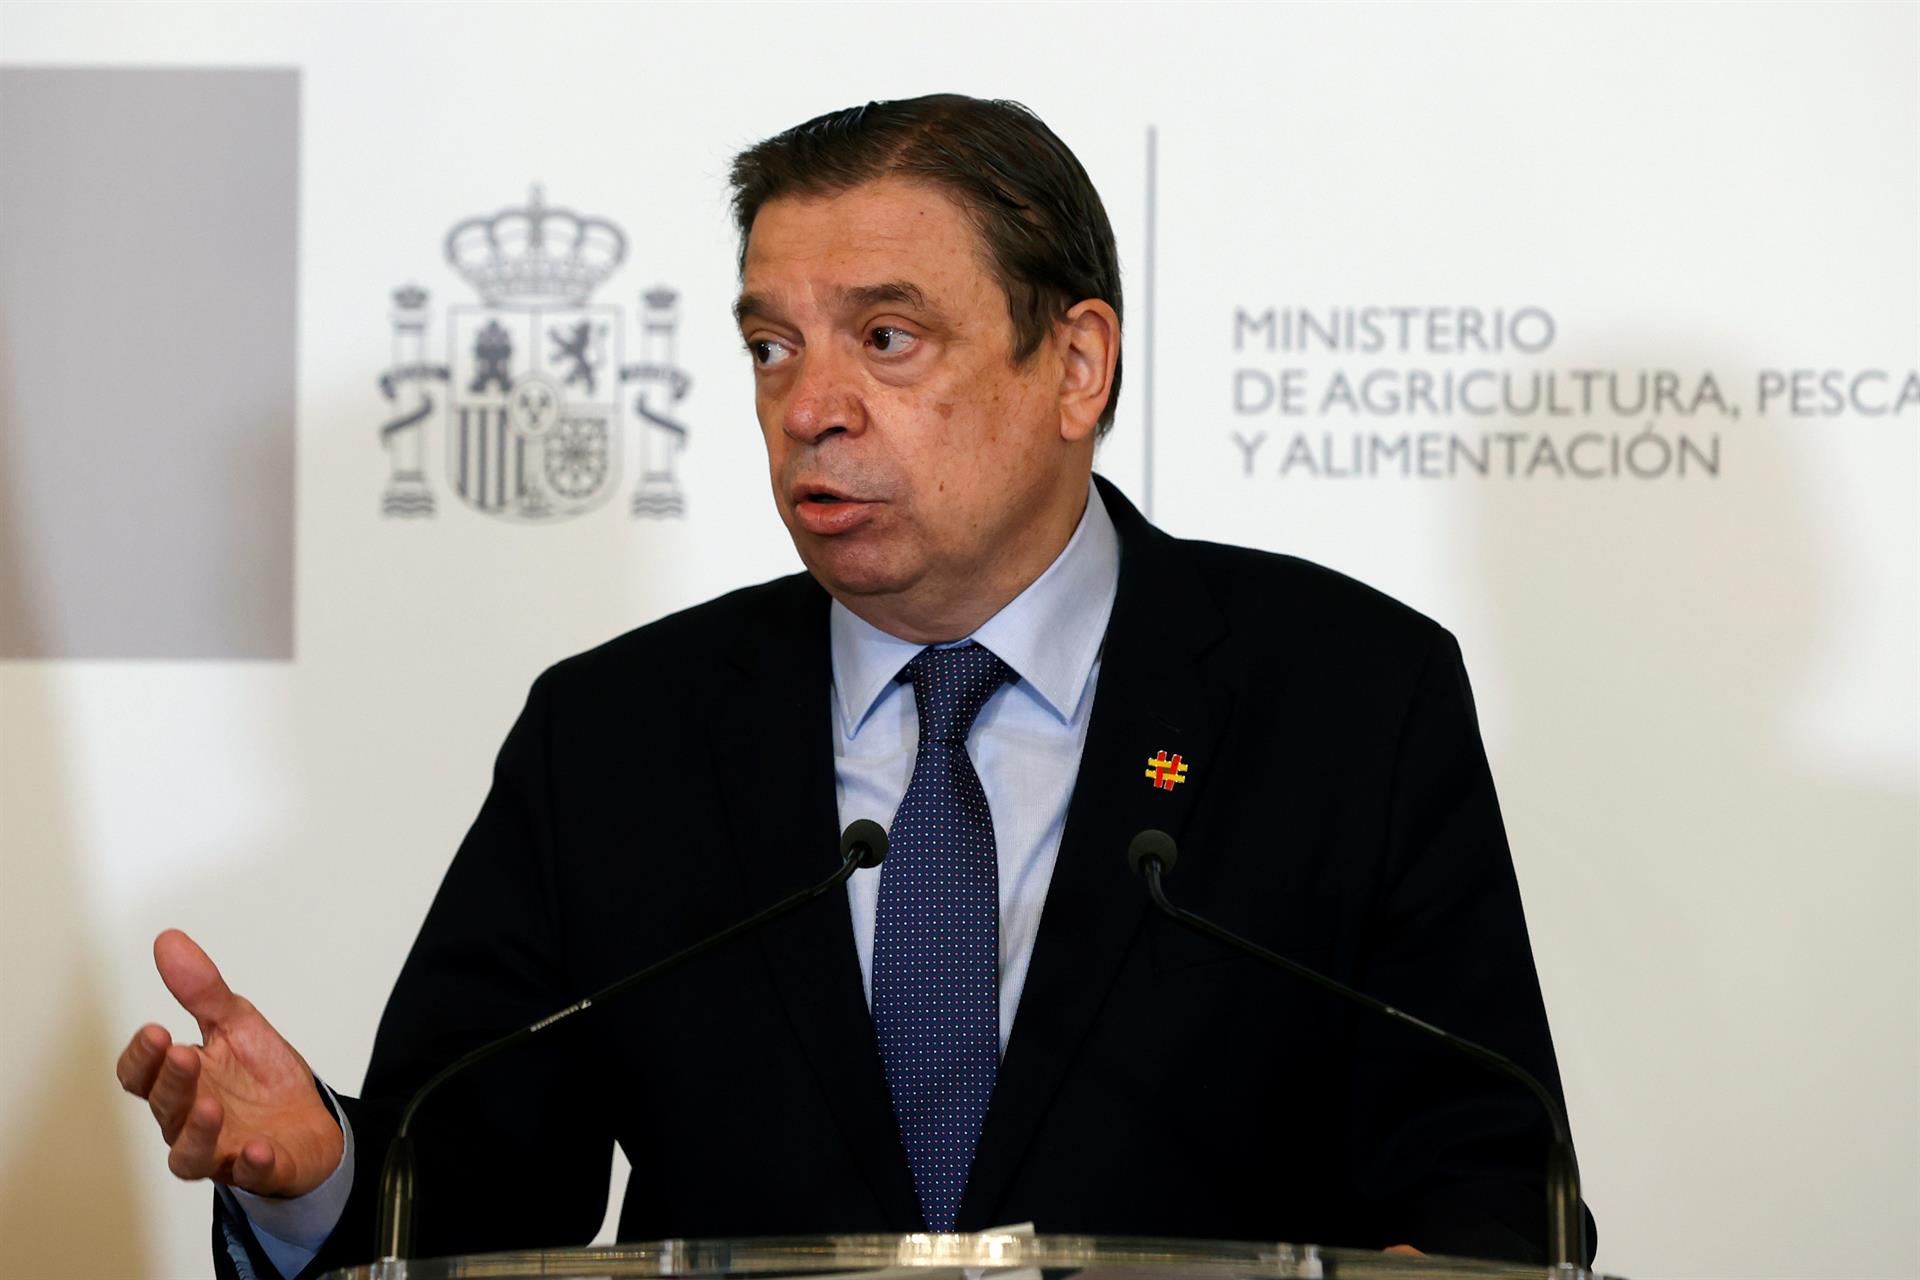 El ministro de Agricultura, Pesca y Alimentación, Luis Planas. Efeagro/J.J. Guillén